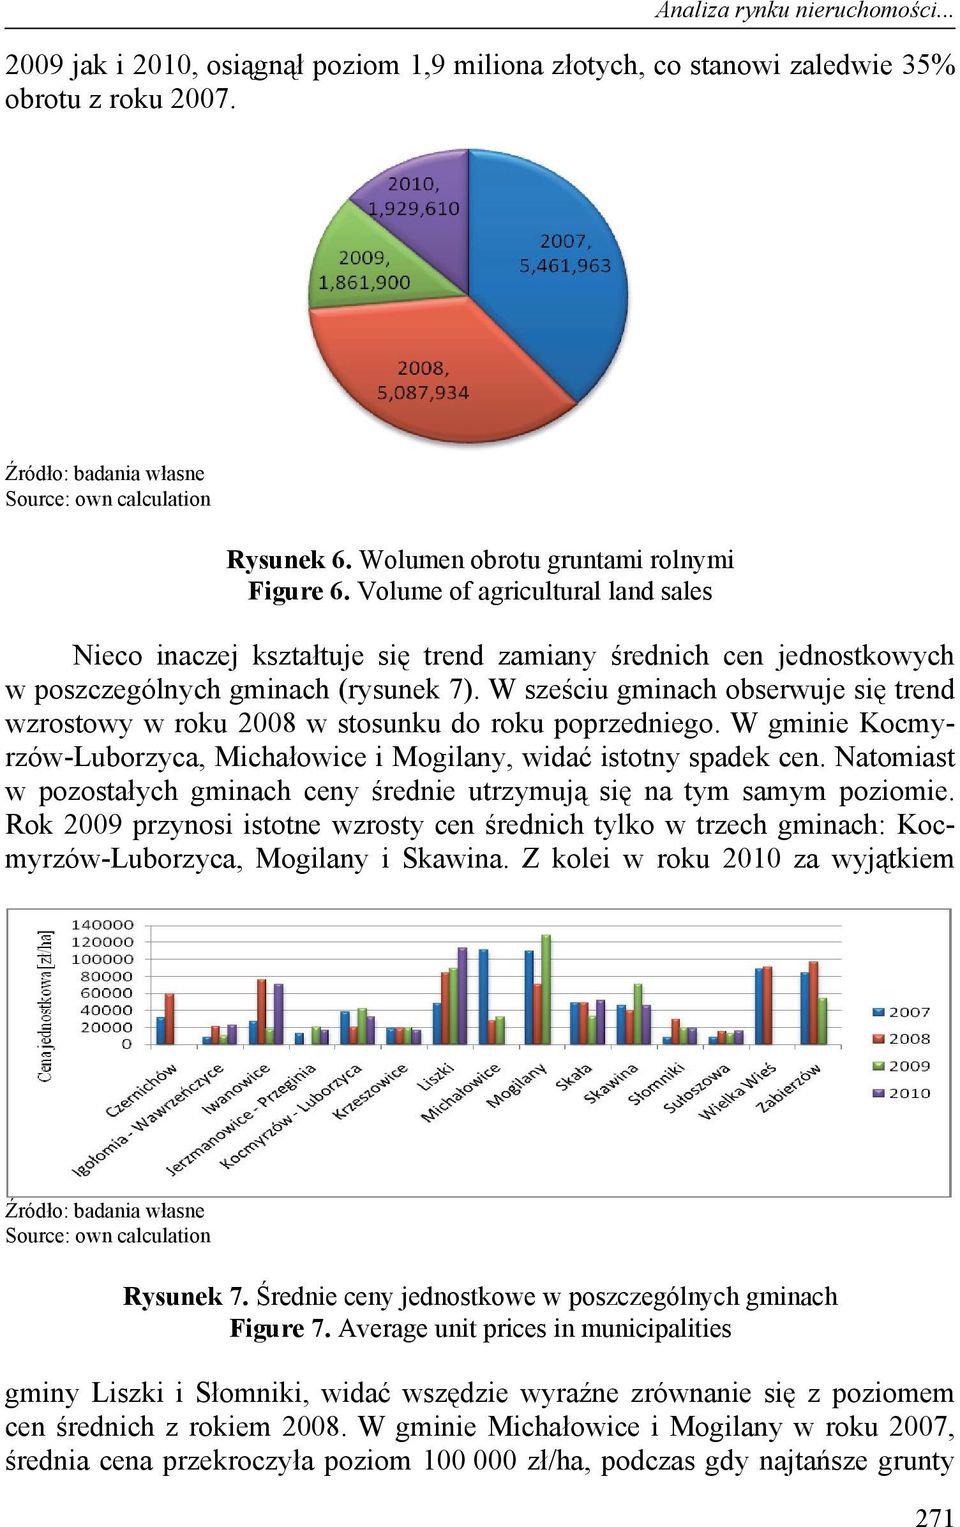 W sześciu gminach obserwuje się trend wzrostowy w roku 2008 w stosunku do roku poprzedniego. W gminie Kocmyrzów-Luborzyca, Michałowice i Mogilany, widać istotny spadek cen.